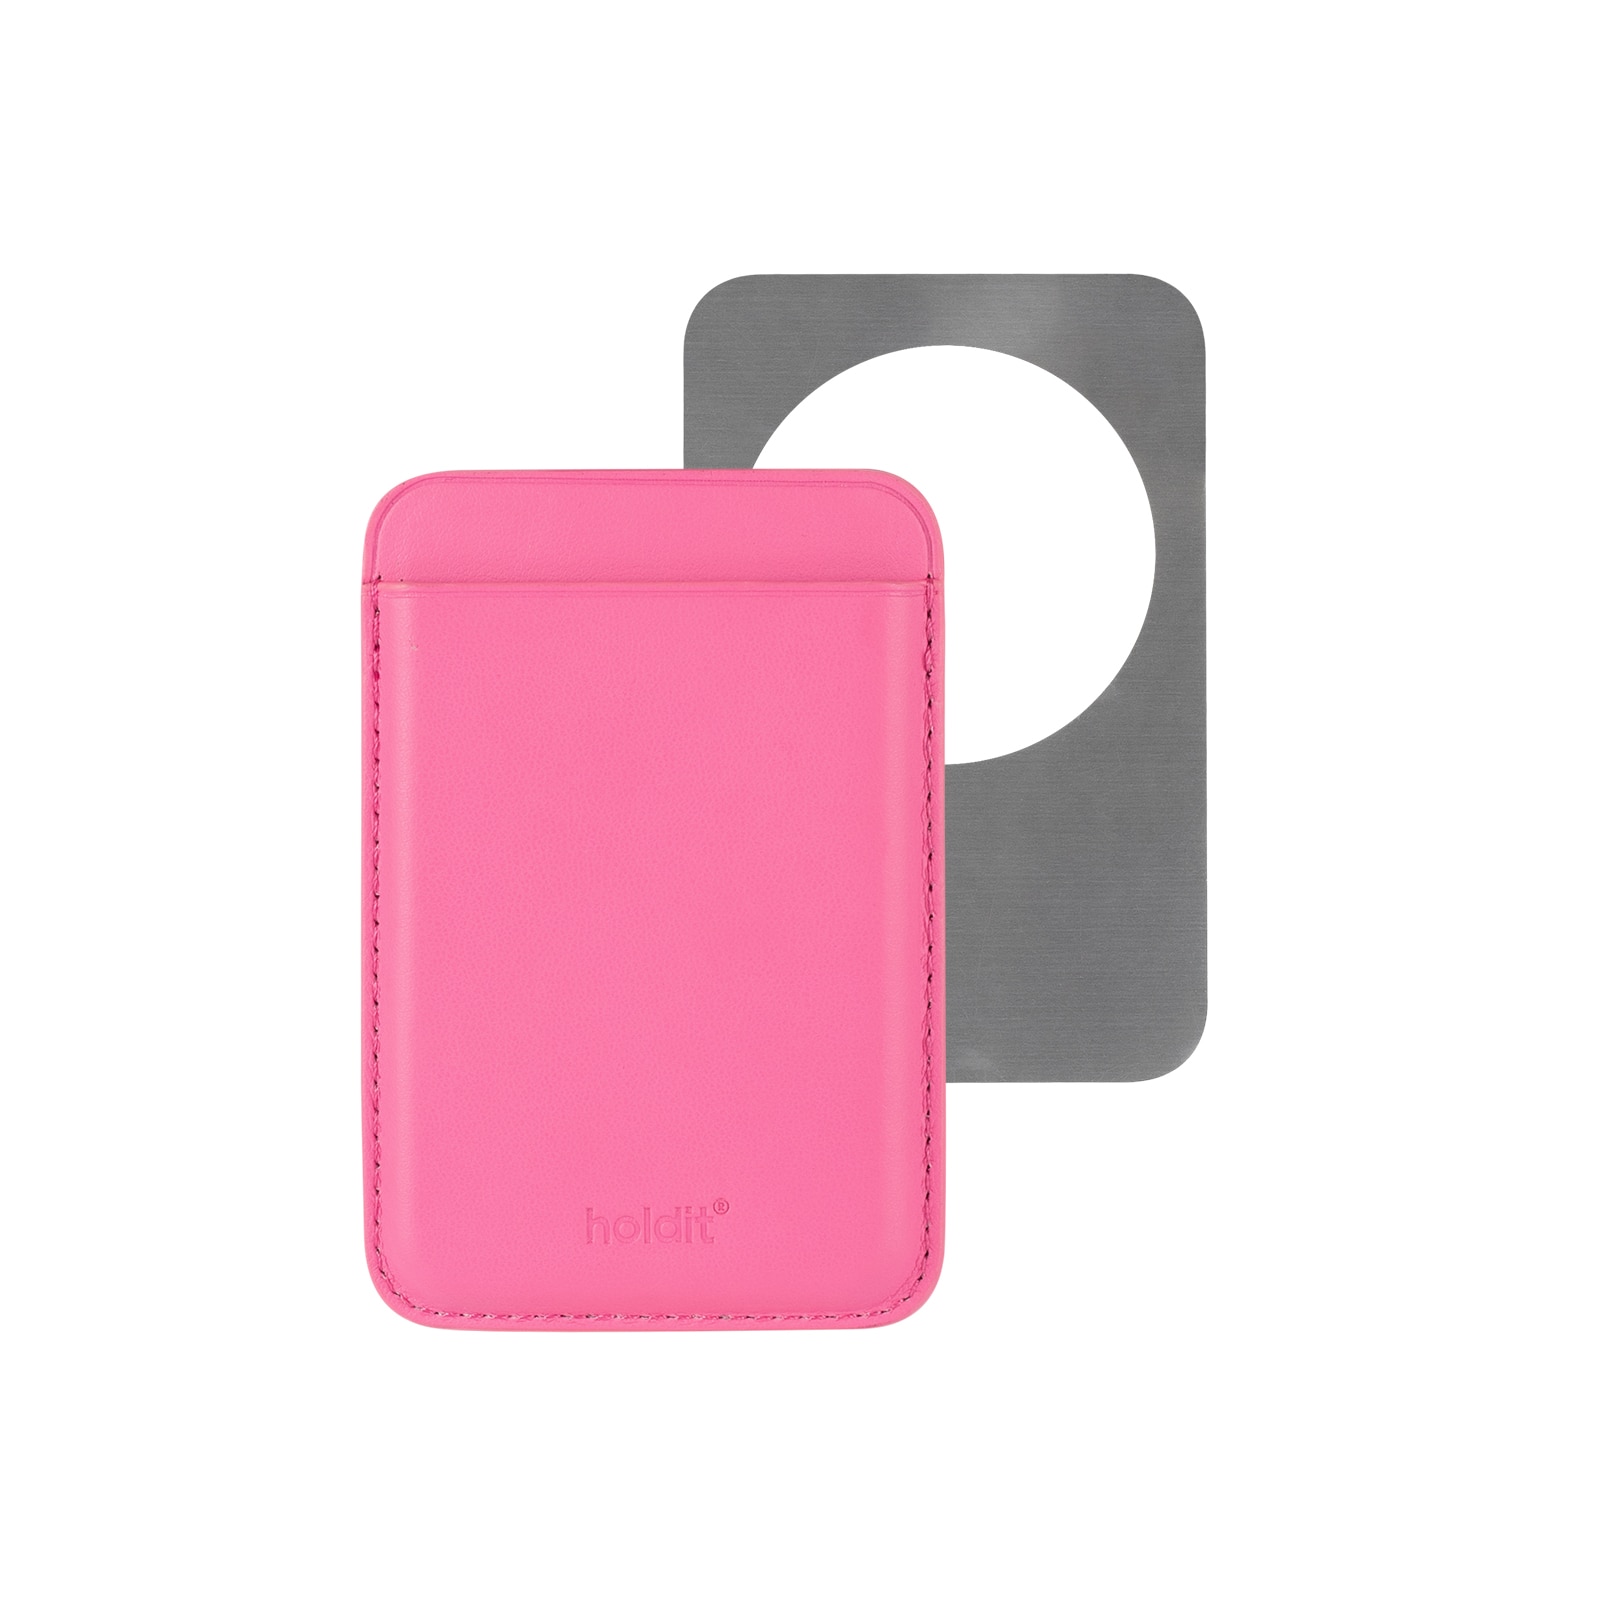 Titular de la tarjeta magnética Bright Pink